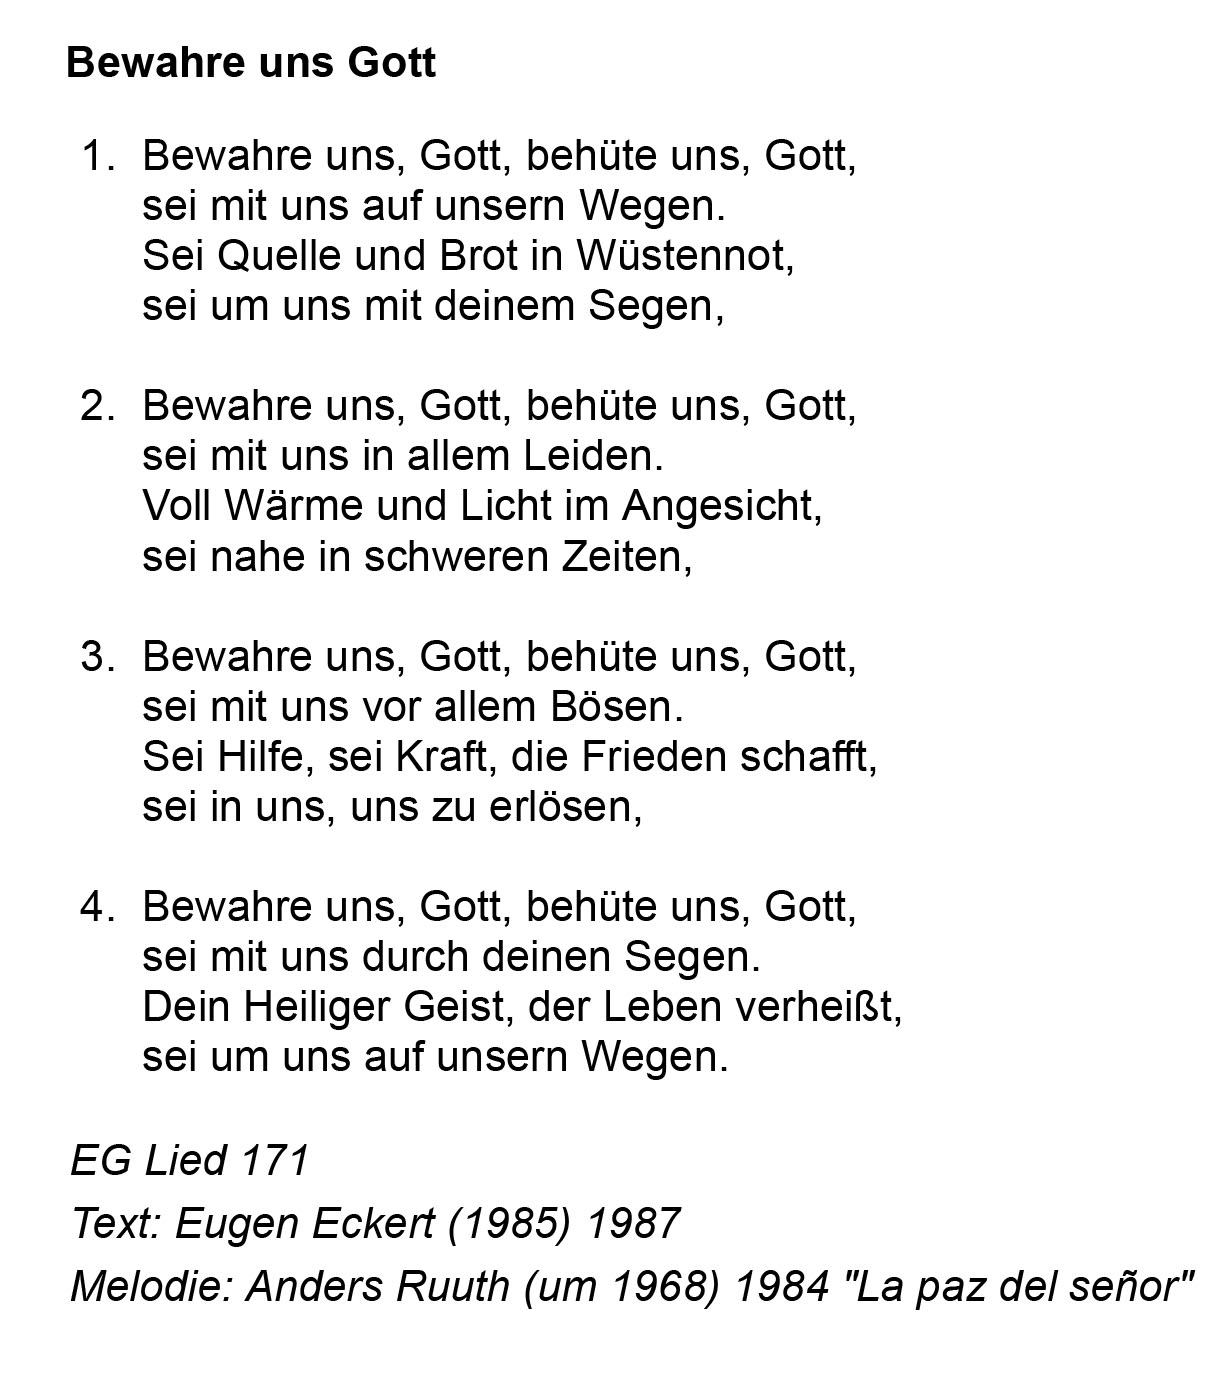 bochum liedtext Himmelsanker vom 28.03.20 (nr. 2) : evangelische
kirchengemeinde bochum